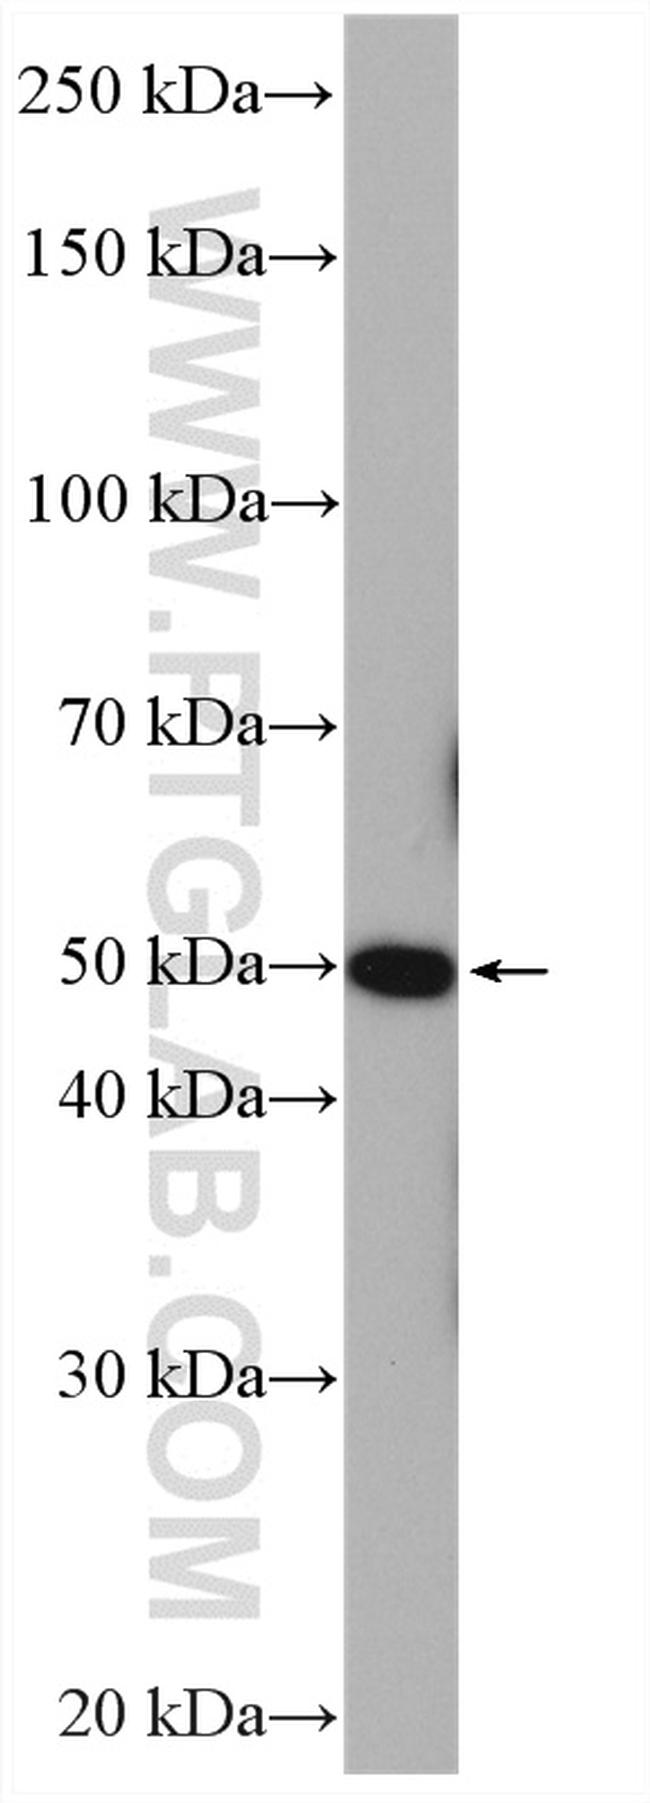 ADRA1A Antibody in Western Blot (WB)